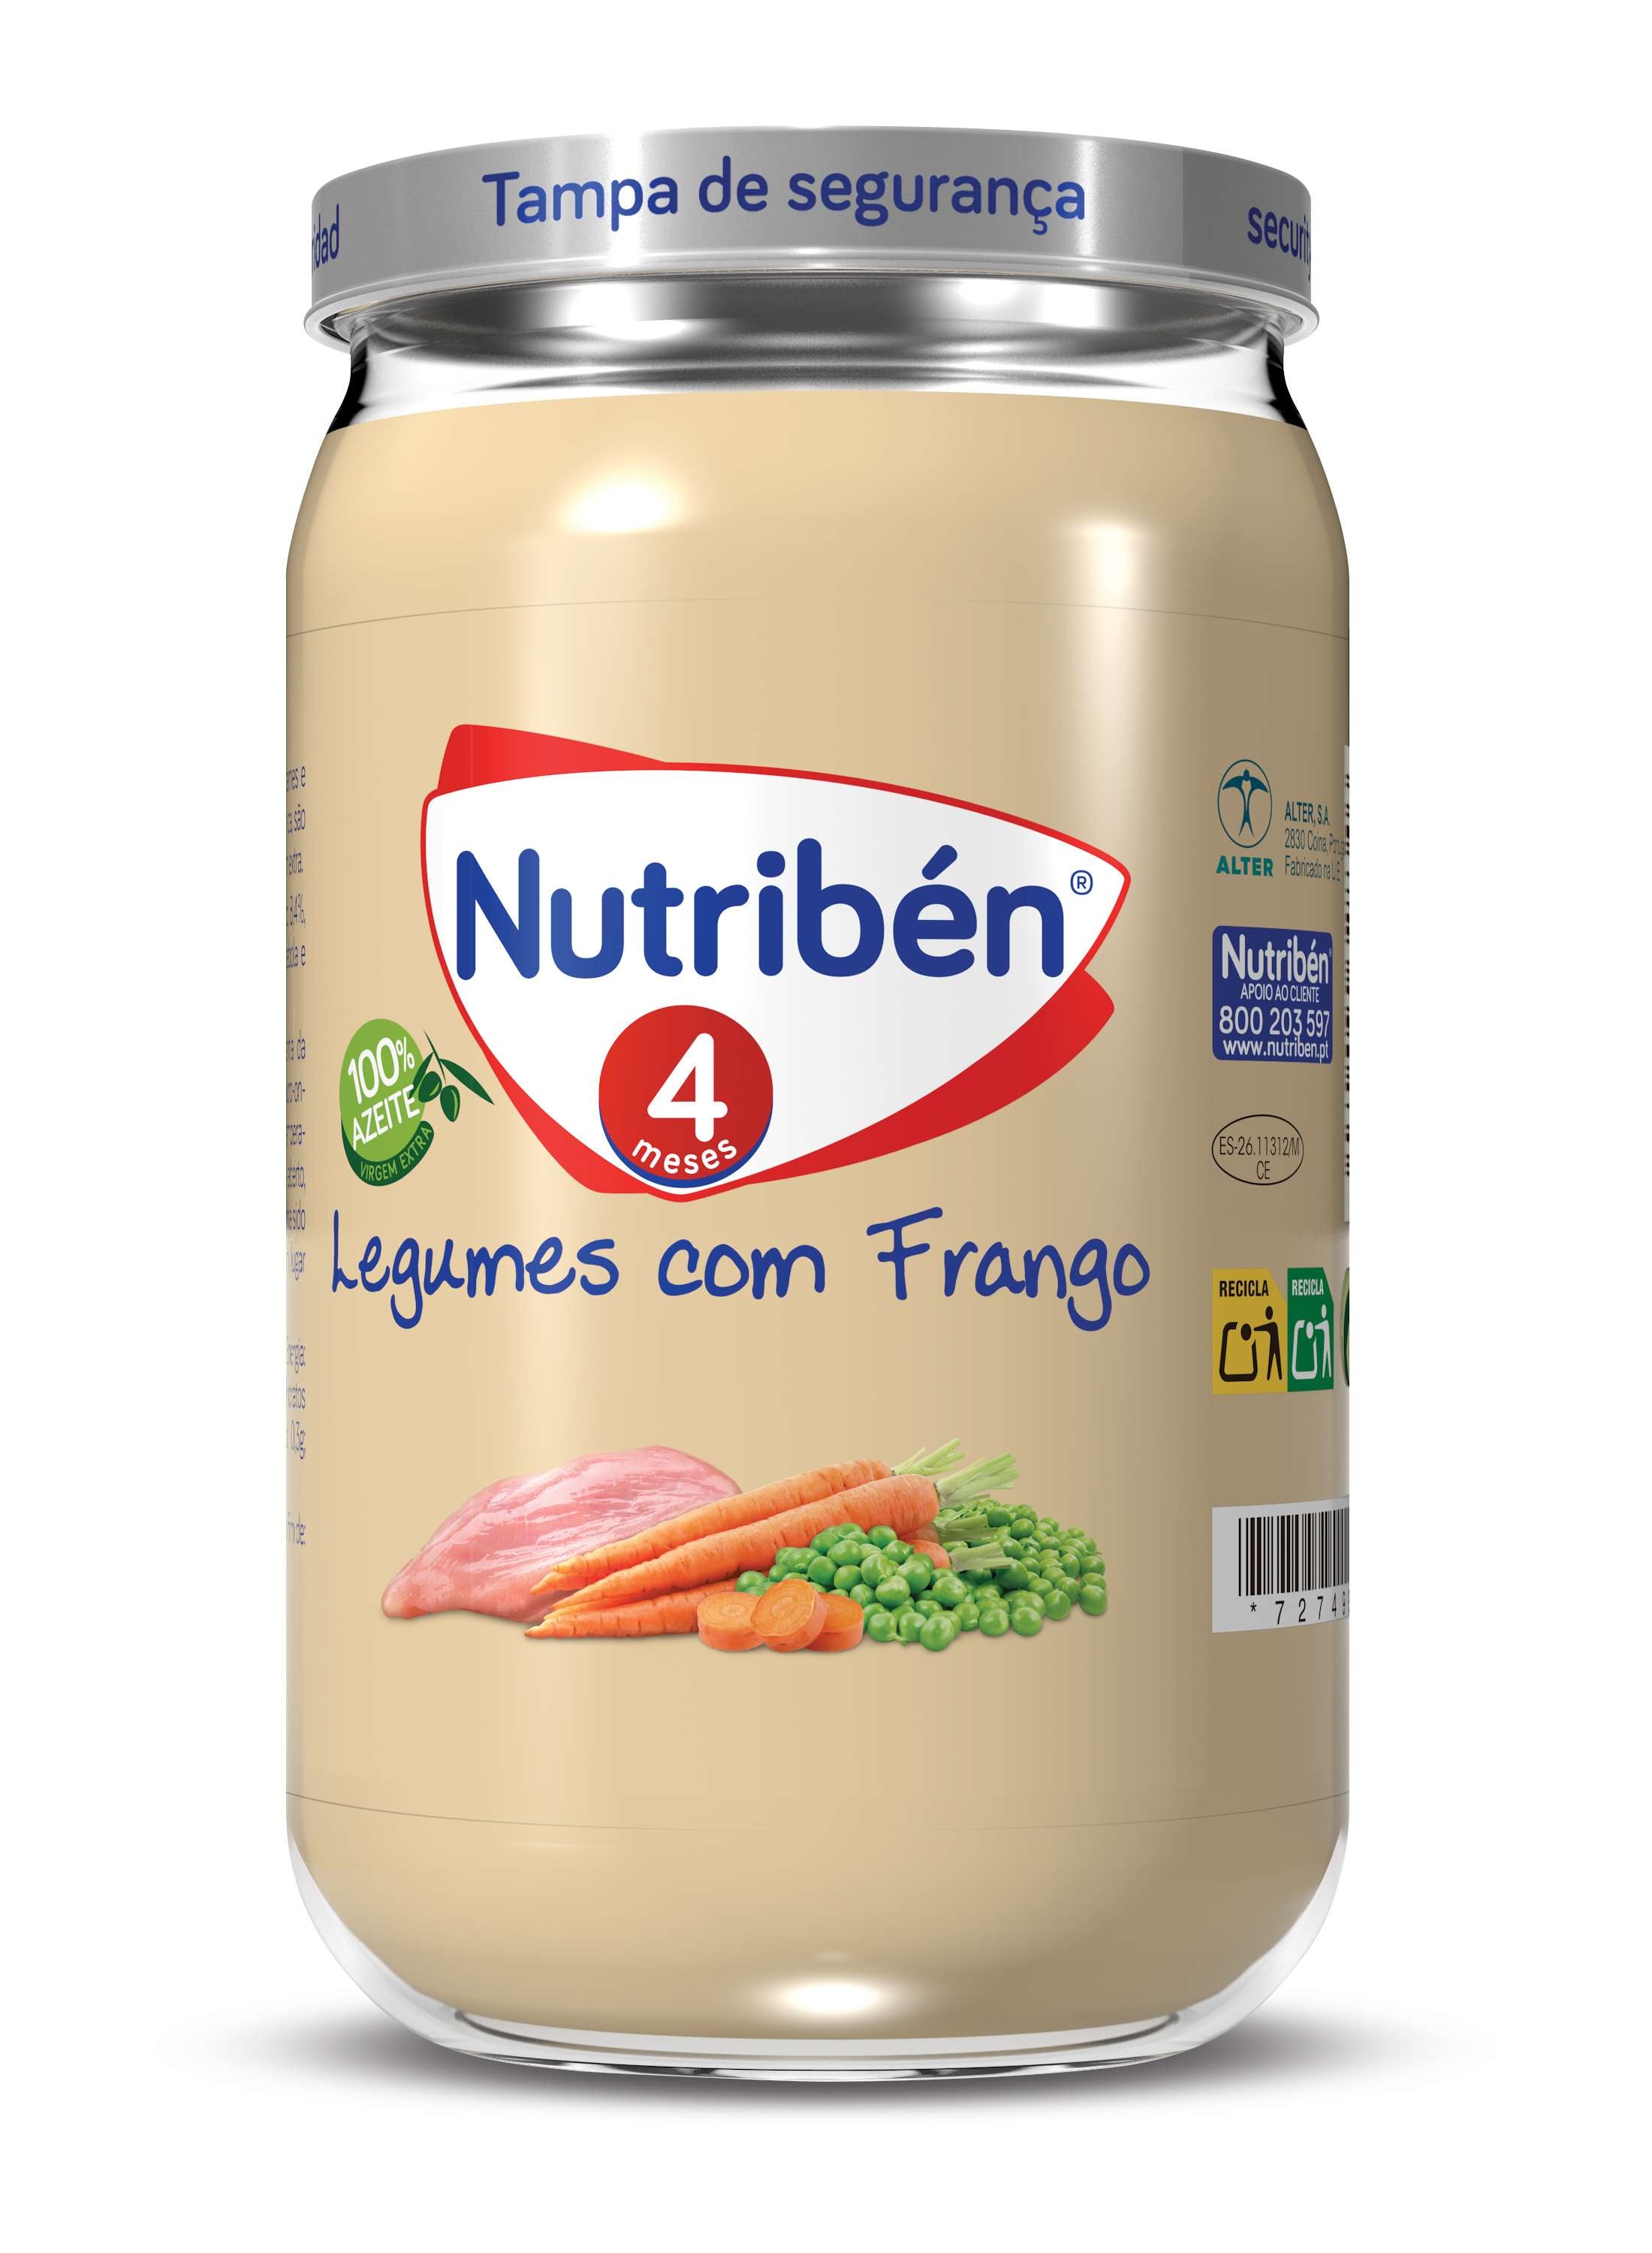 Nutribén Boião 4M Legumes com Frangos 235g 